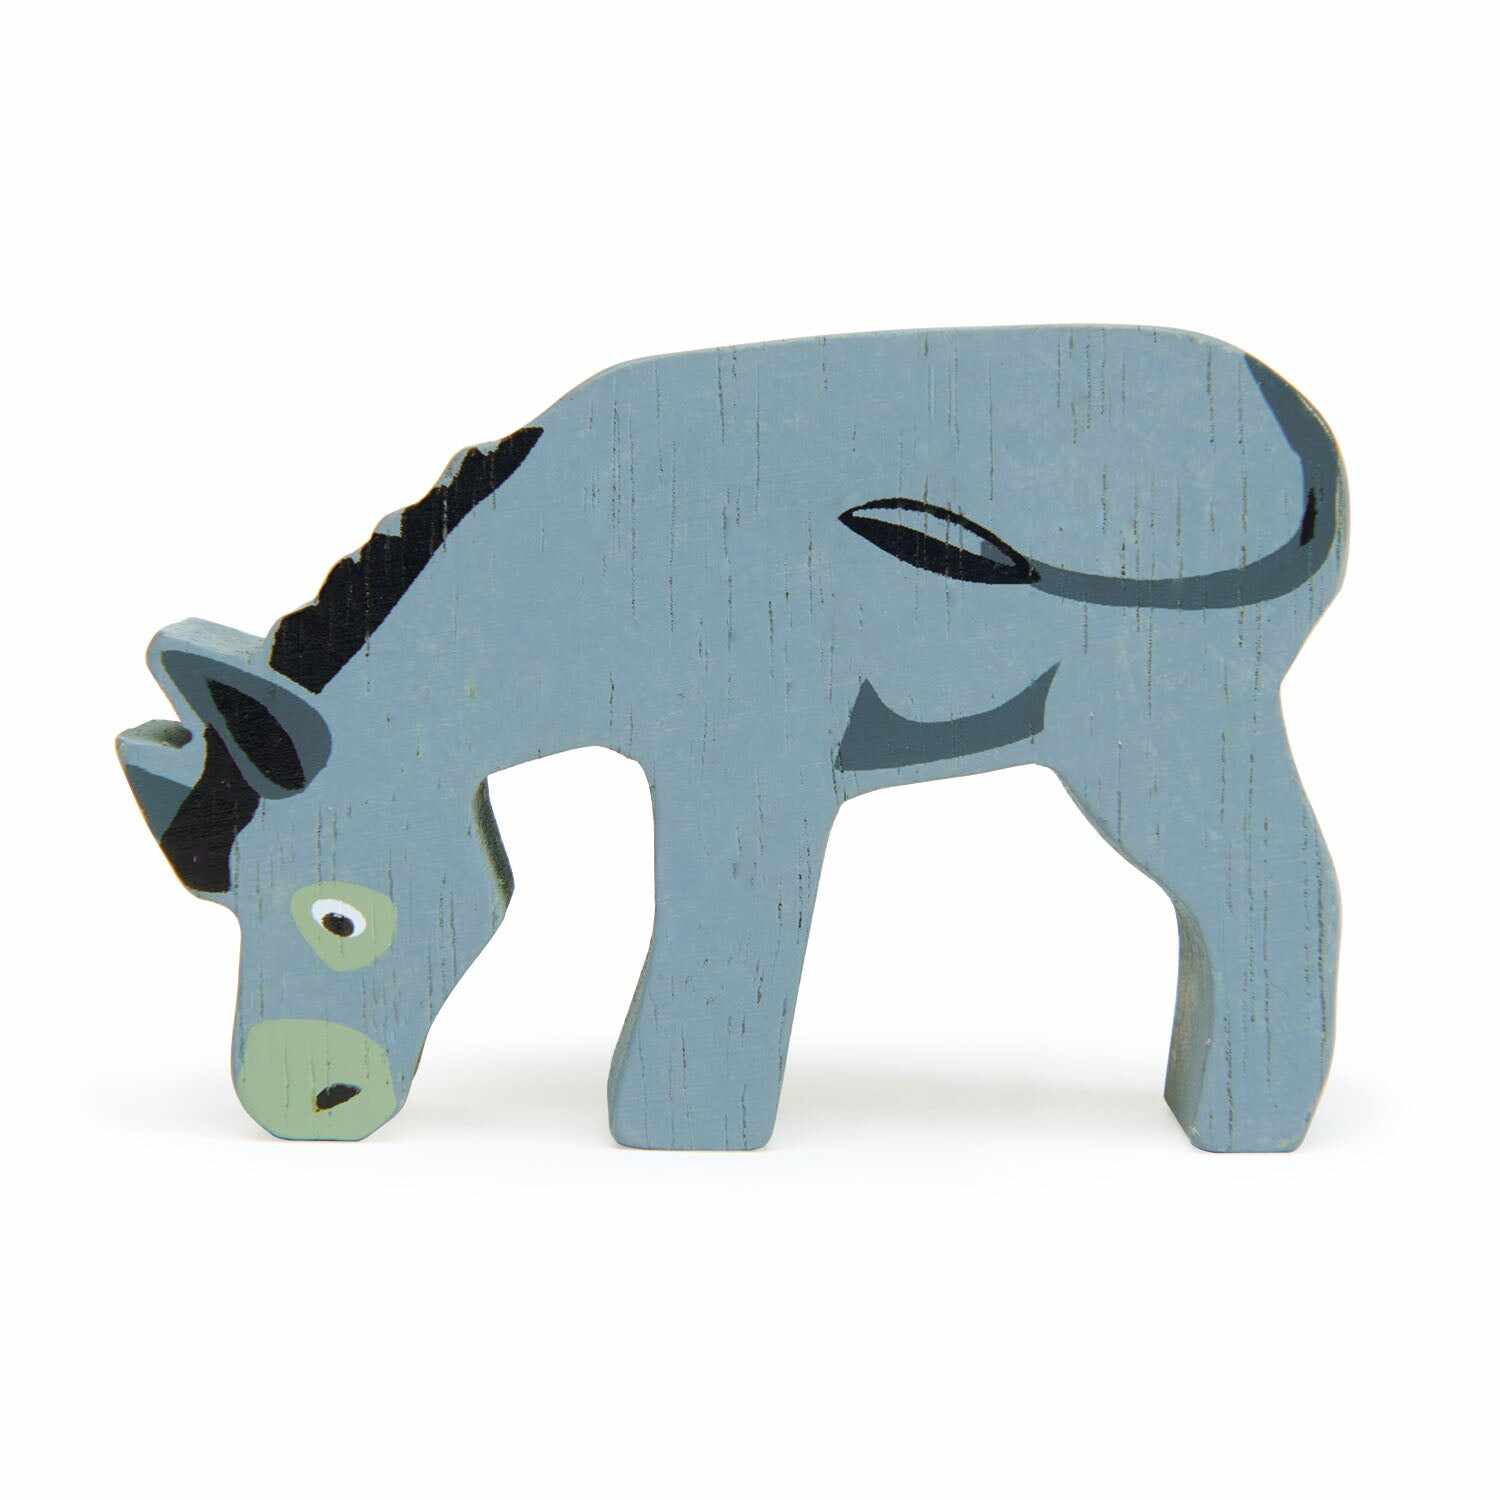 Figurina - Farmyard Animals - Donkey | Tender Leaf Toys